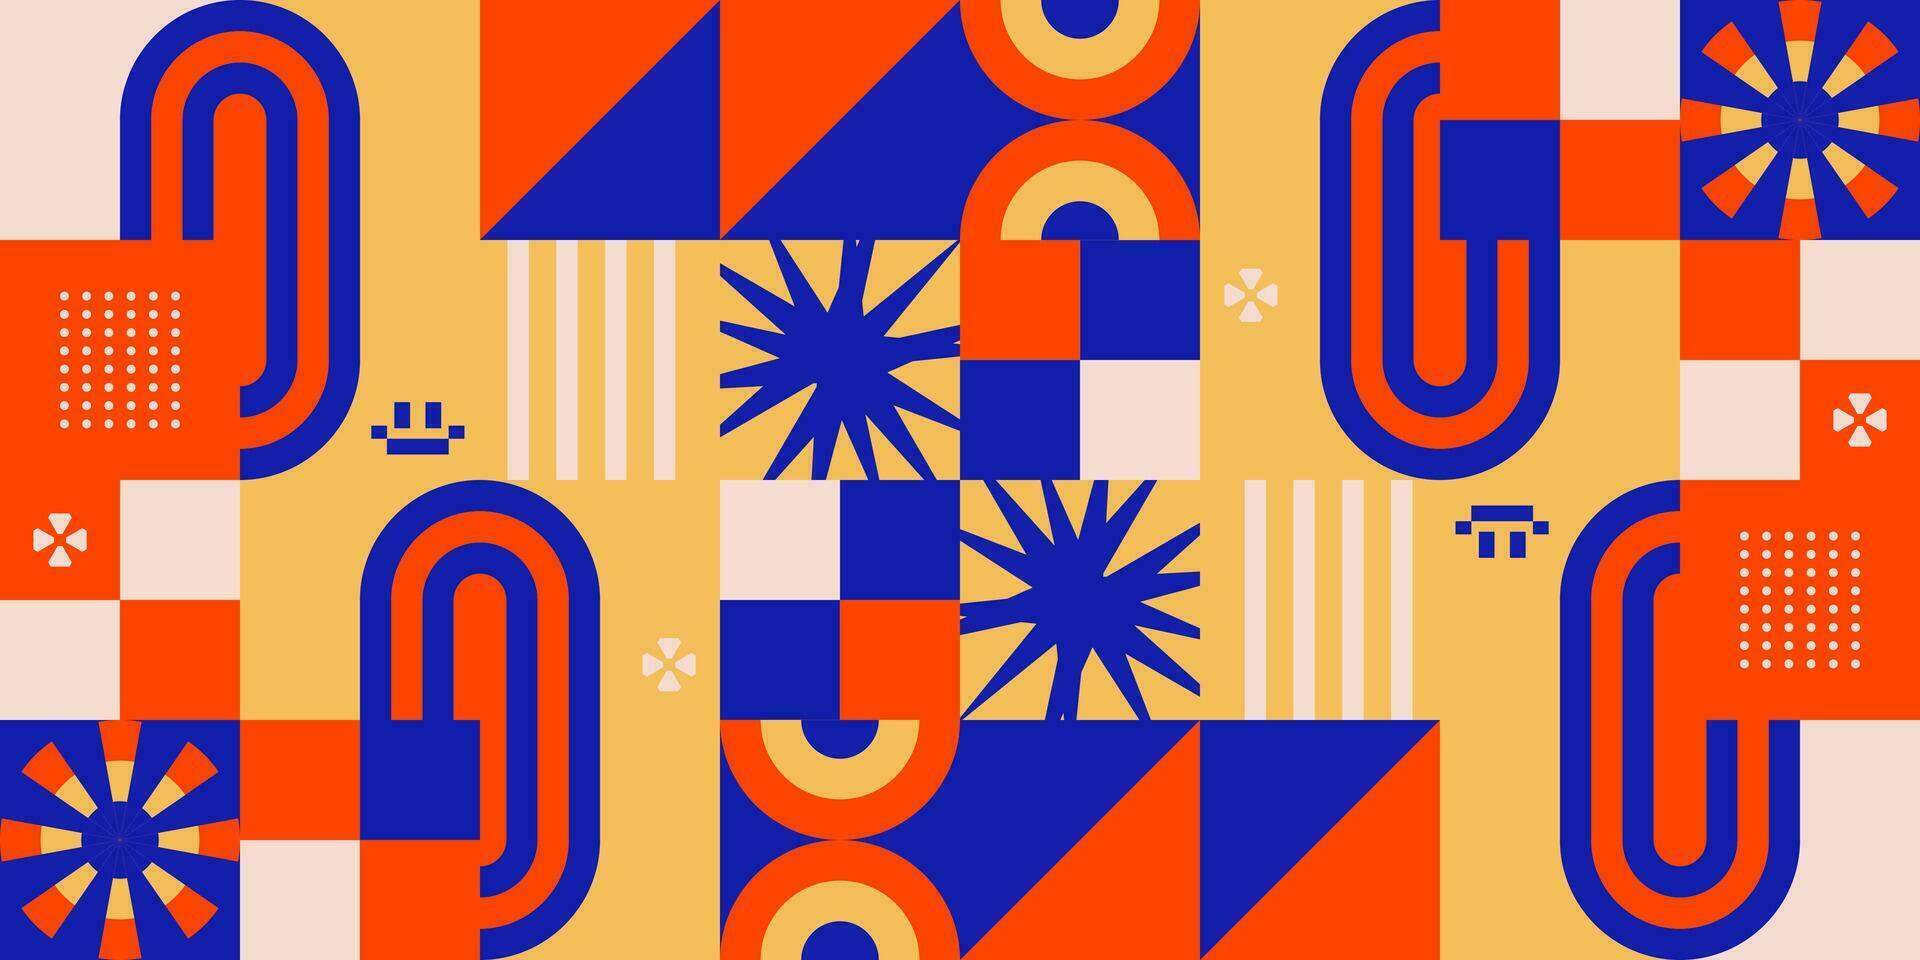 mozaïek- patroon achtergrond esthetisch poster lay-out banier kleurrijk kaart sjabloon backdrop evenement identiteit bewerkbare vector